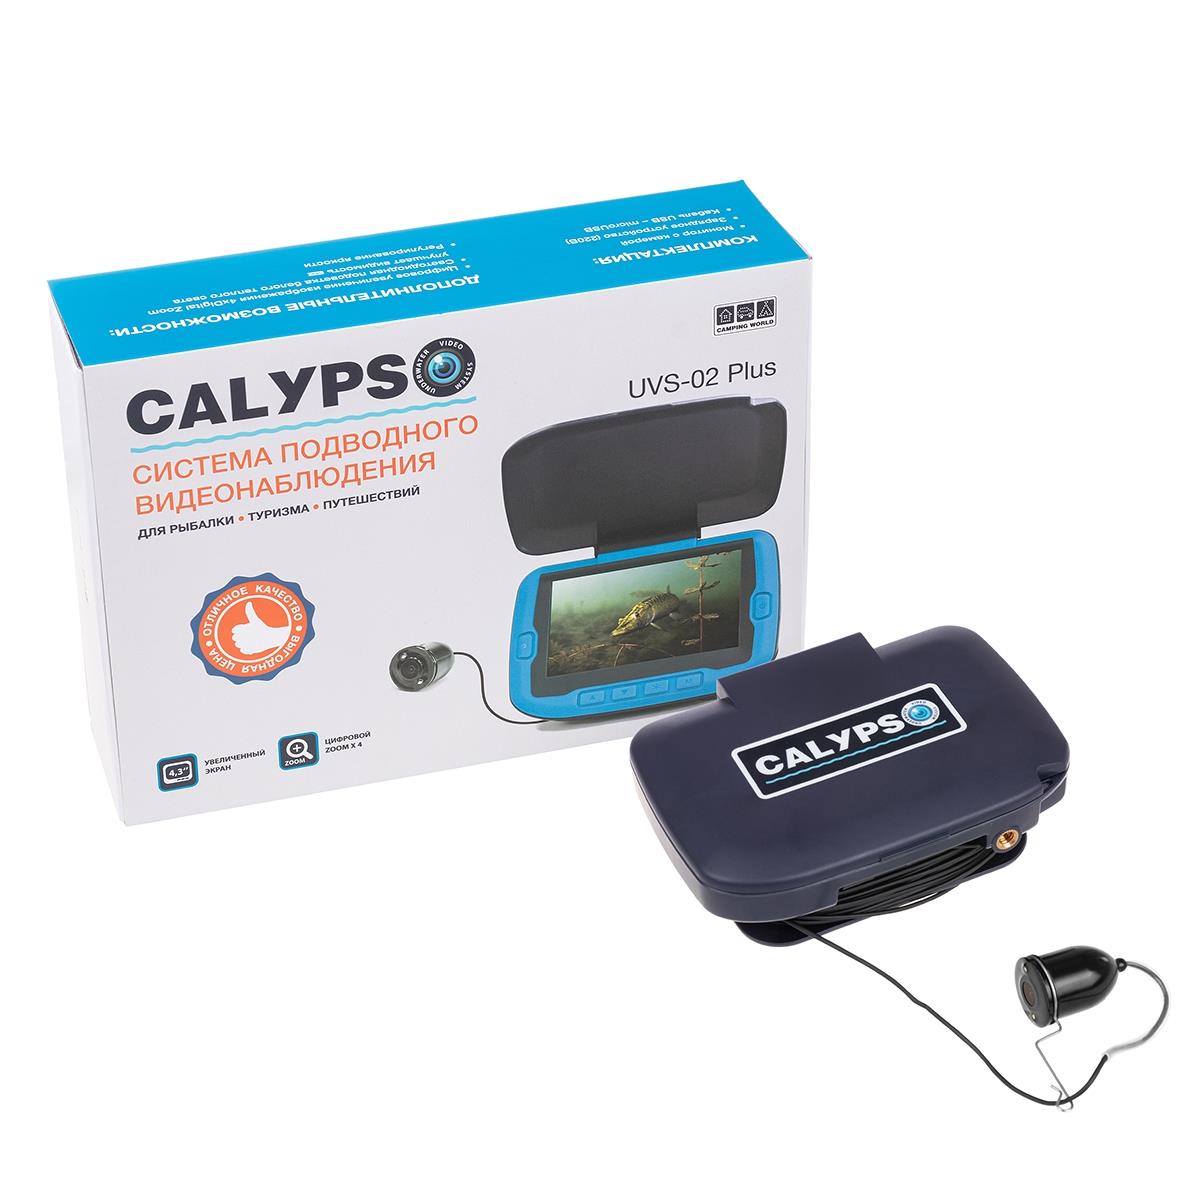 Подводная видеокамера CALYPSO UVS-02 PLUS (FDV-1112) козырек солнцезащитный airline